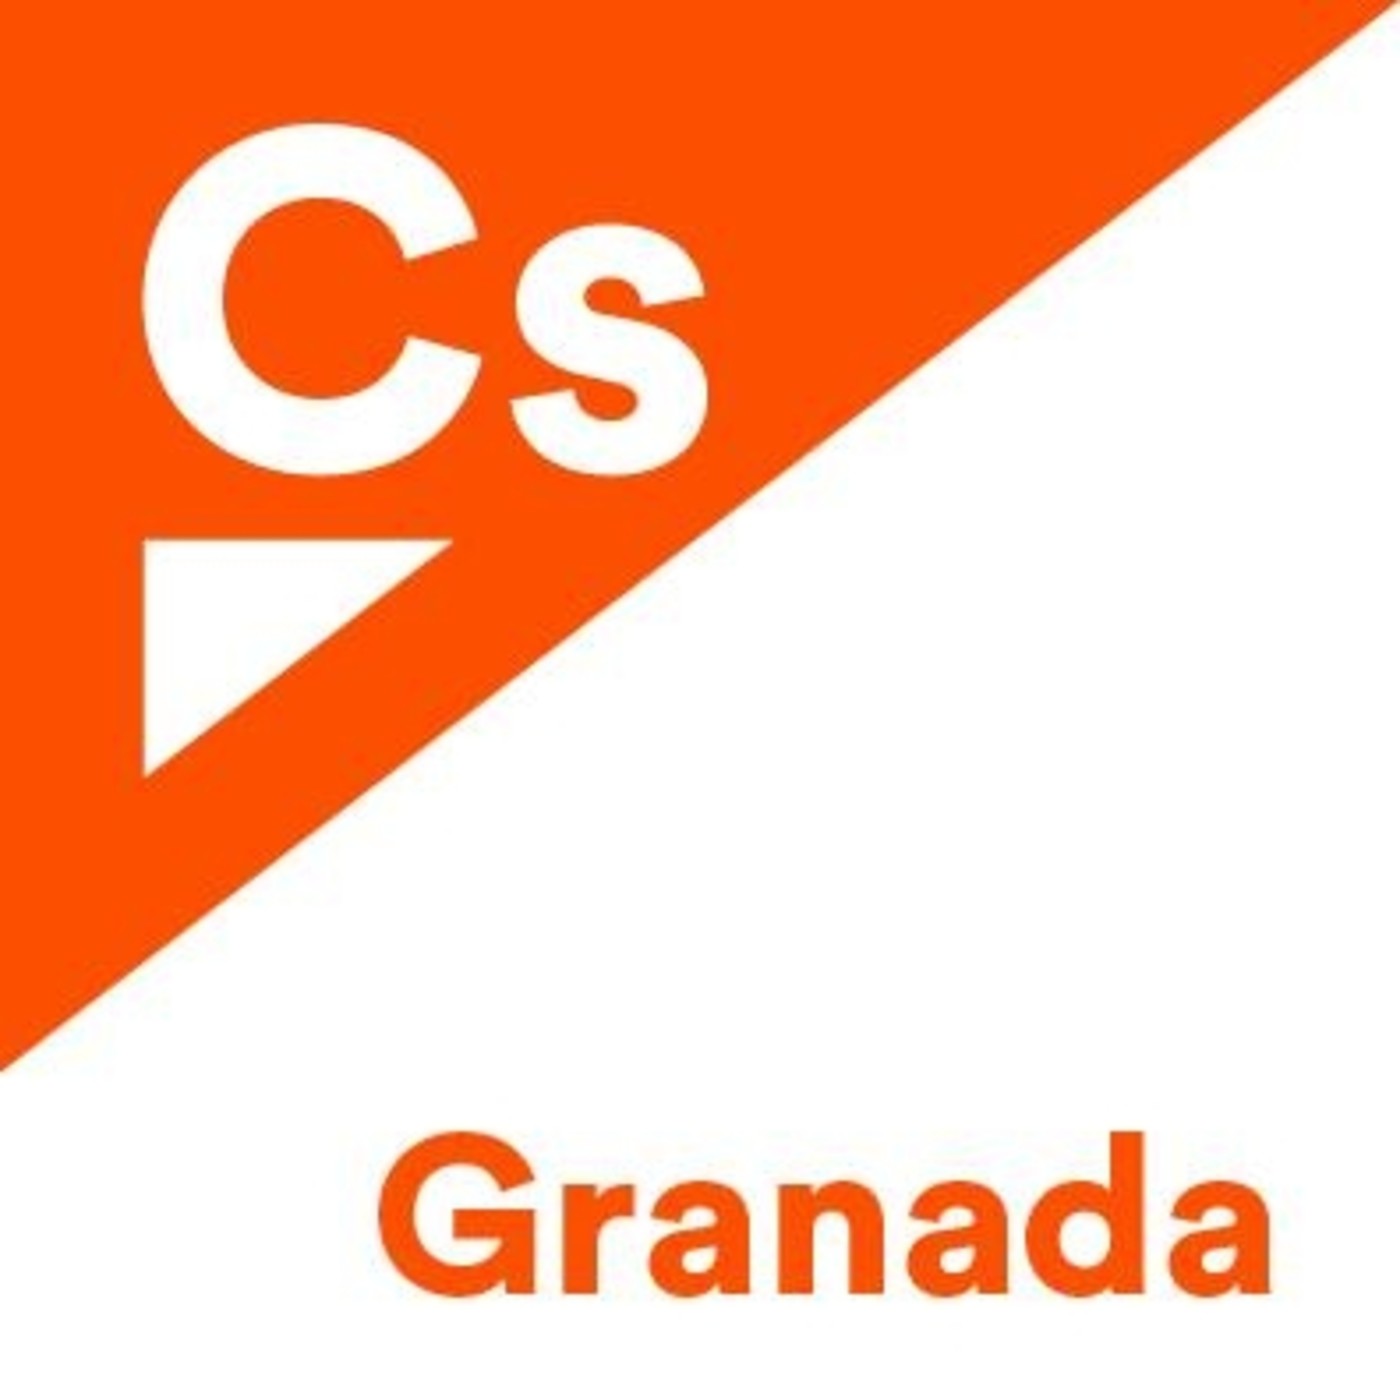 Ciudadanos Granada